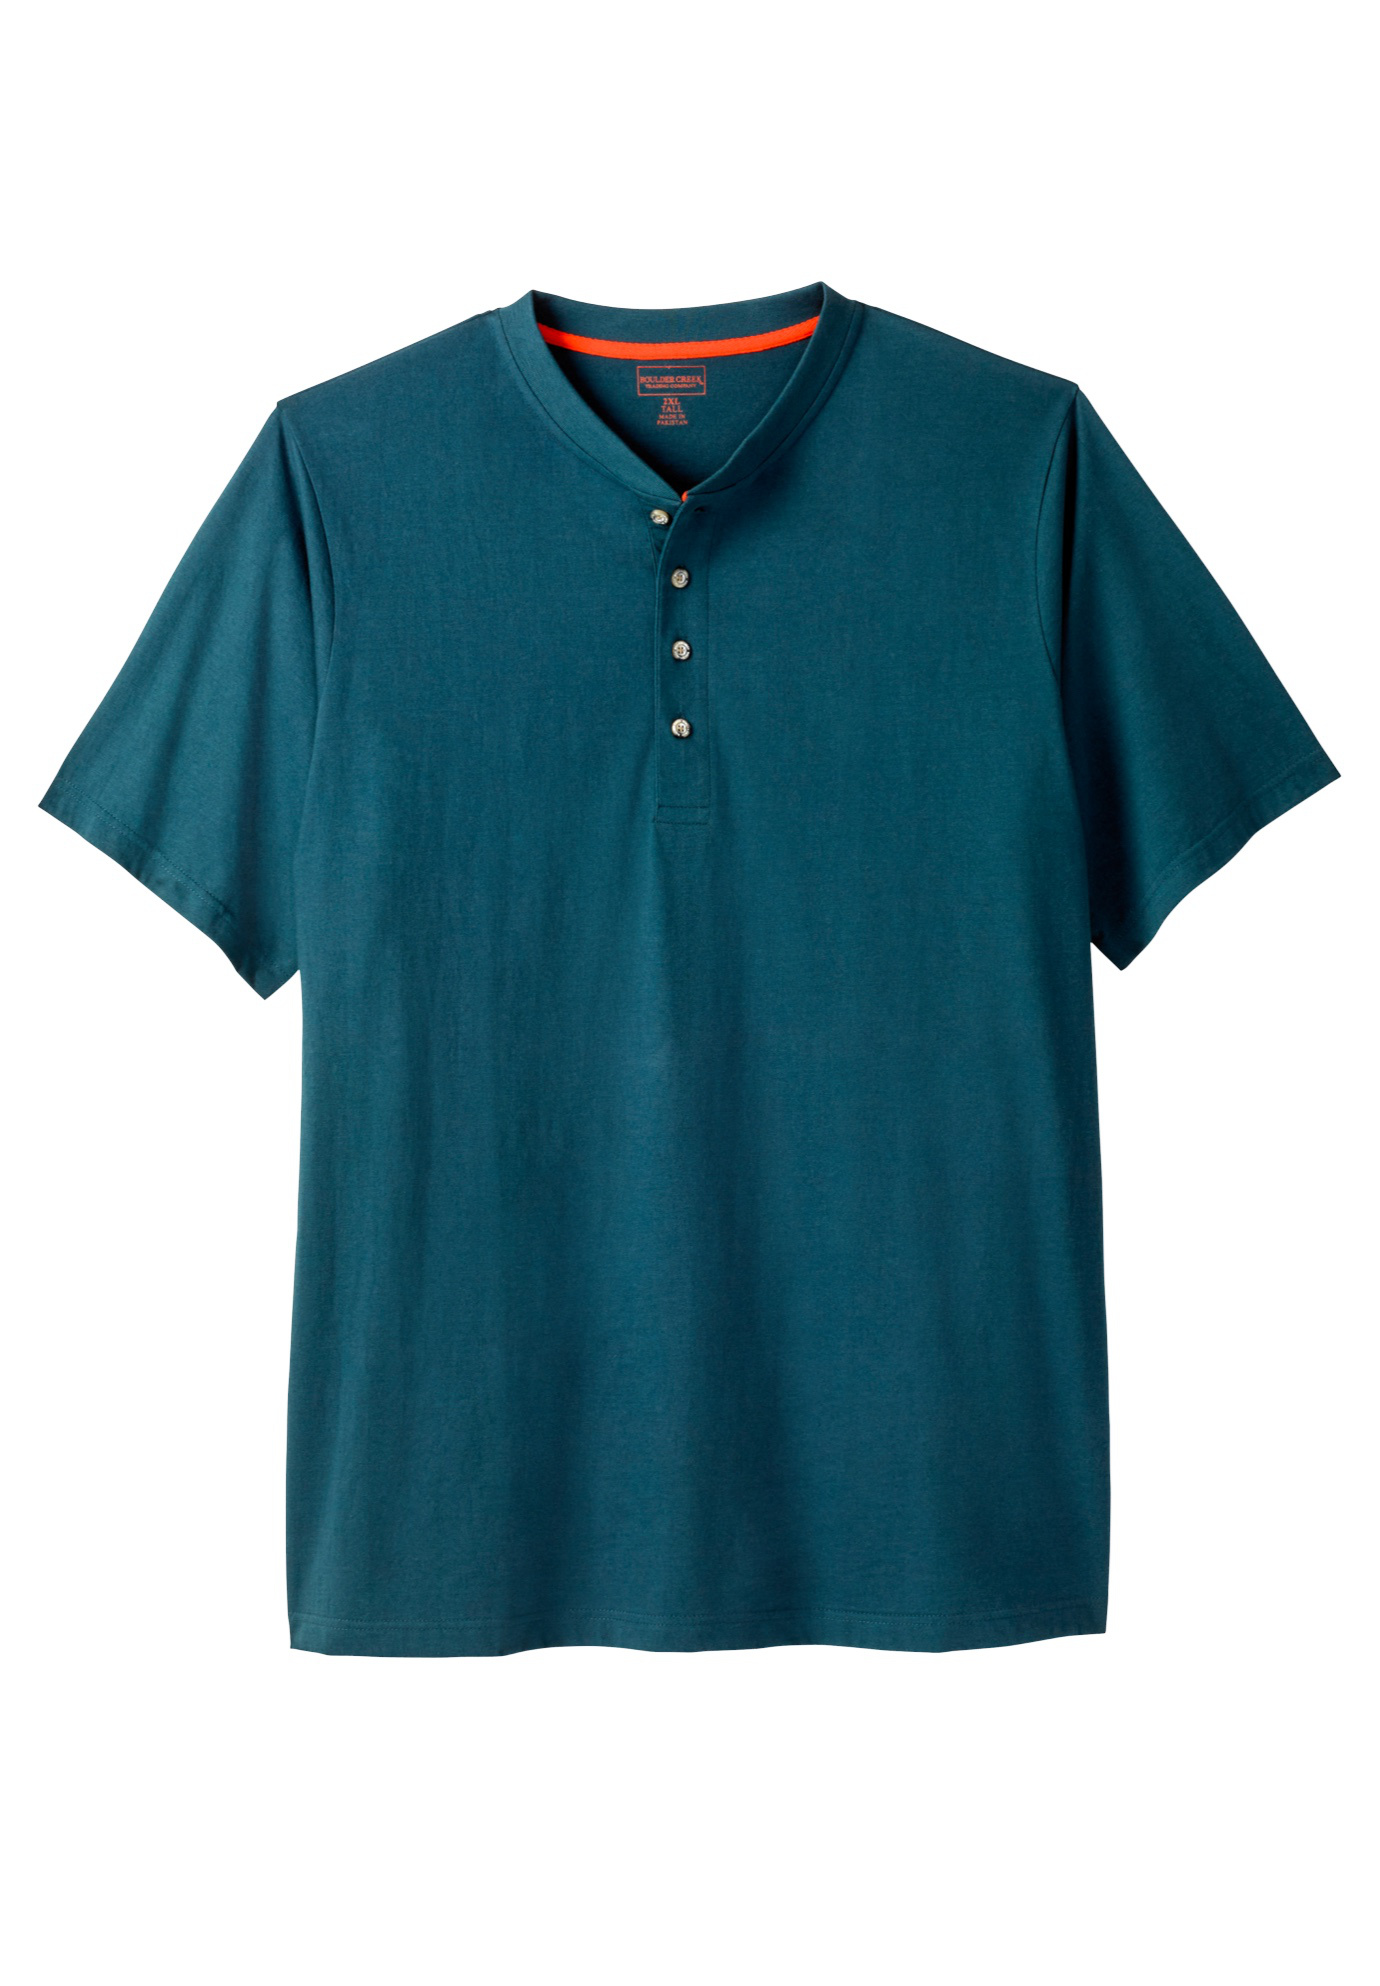 Boulder Creek by Kingsize Mens Big /& Tall Heavyweight Short-Sleeve Henley Shirt